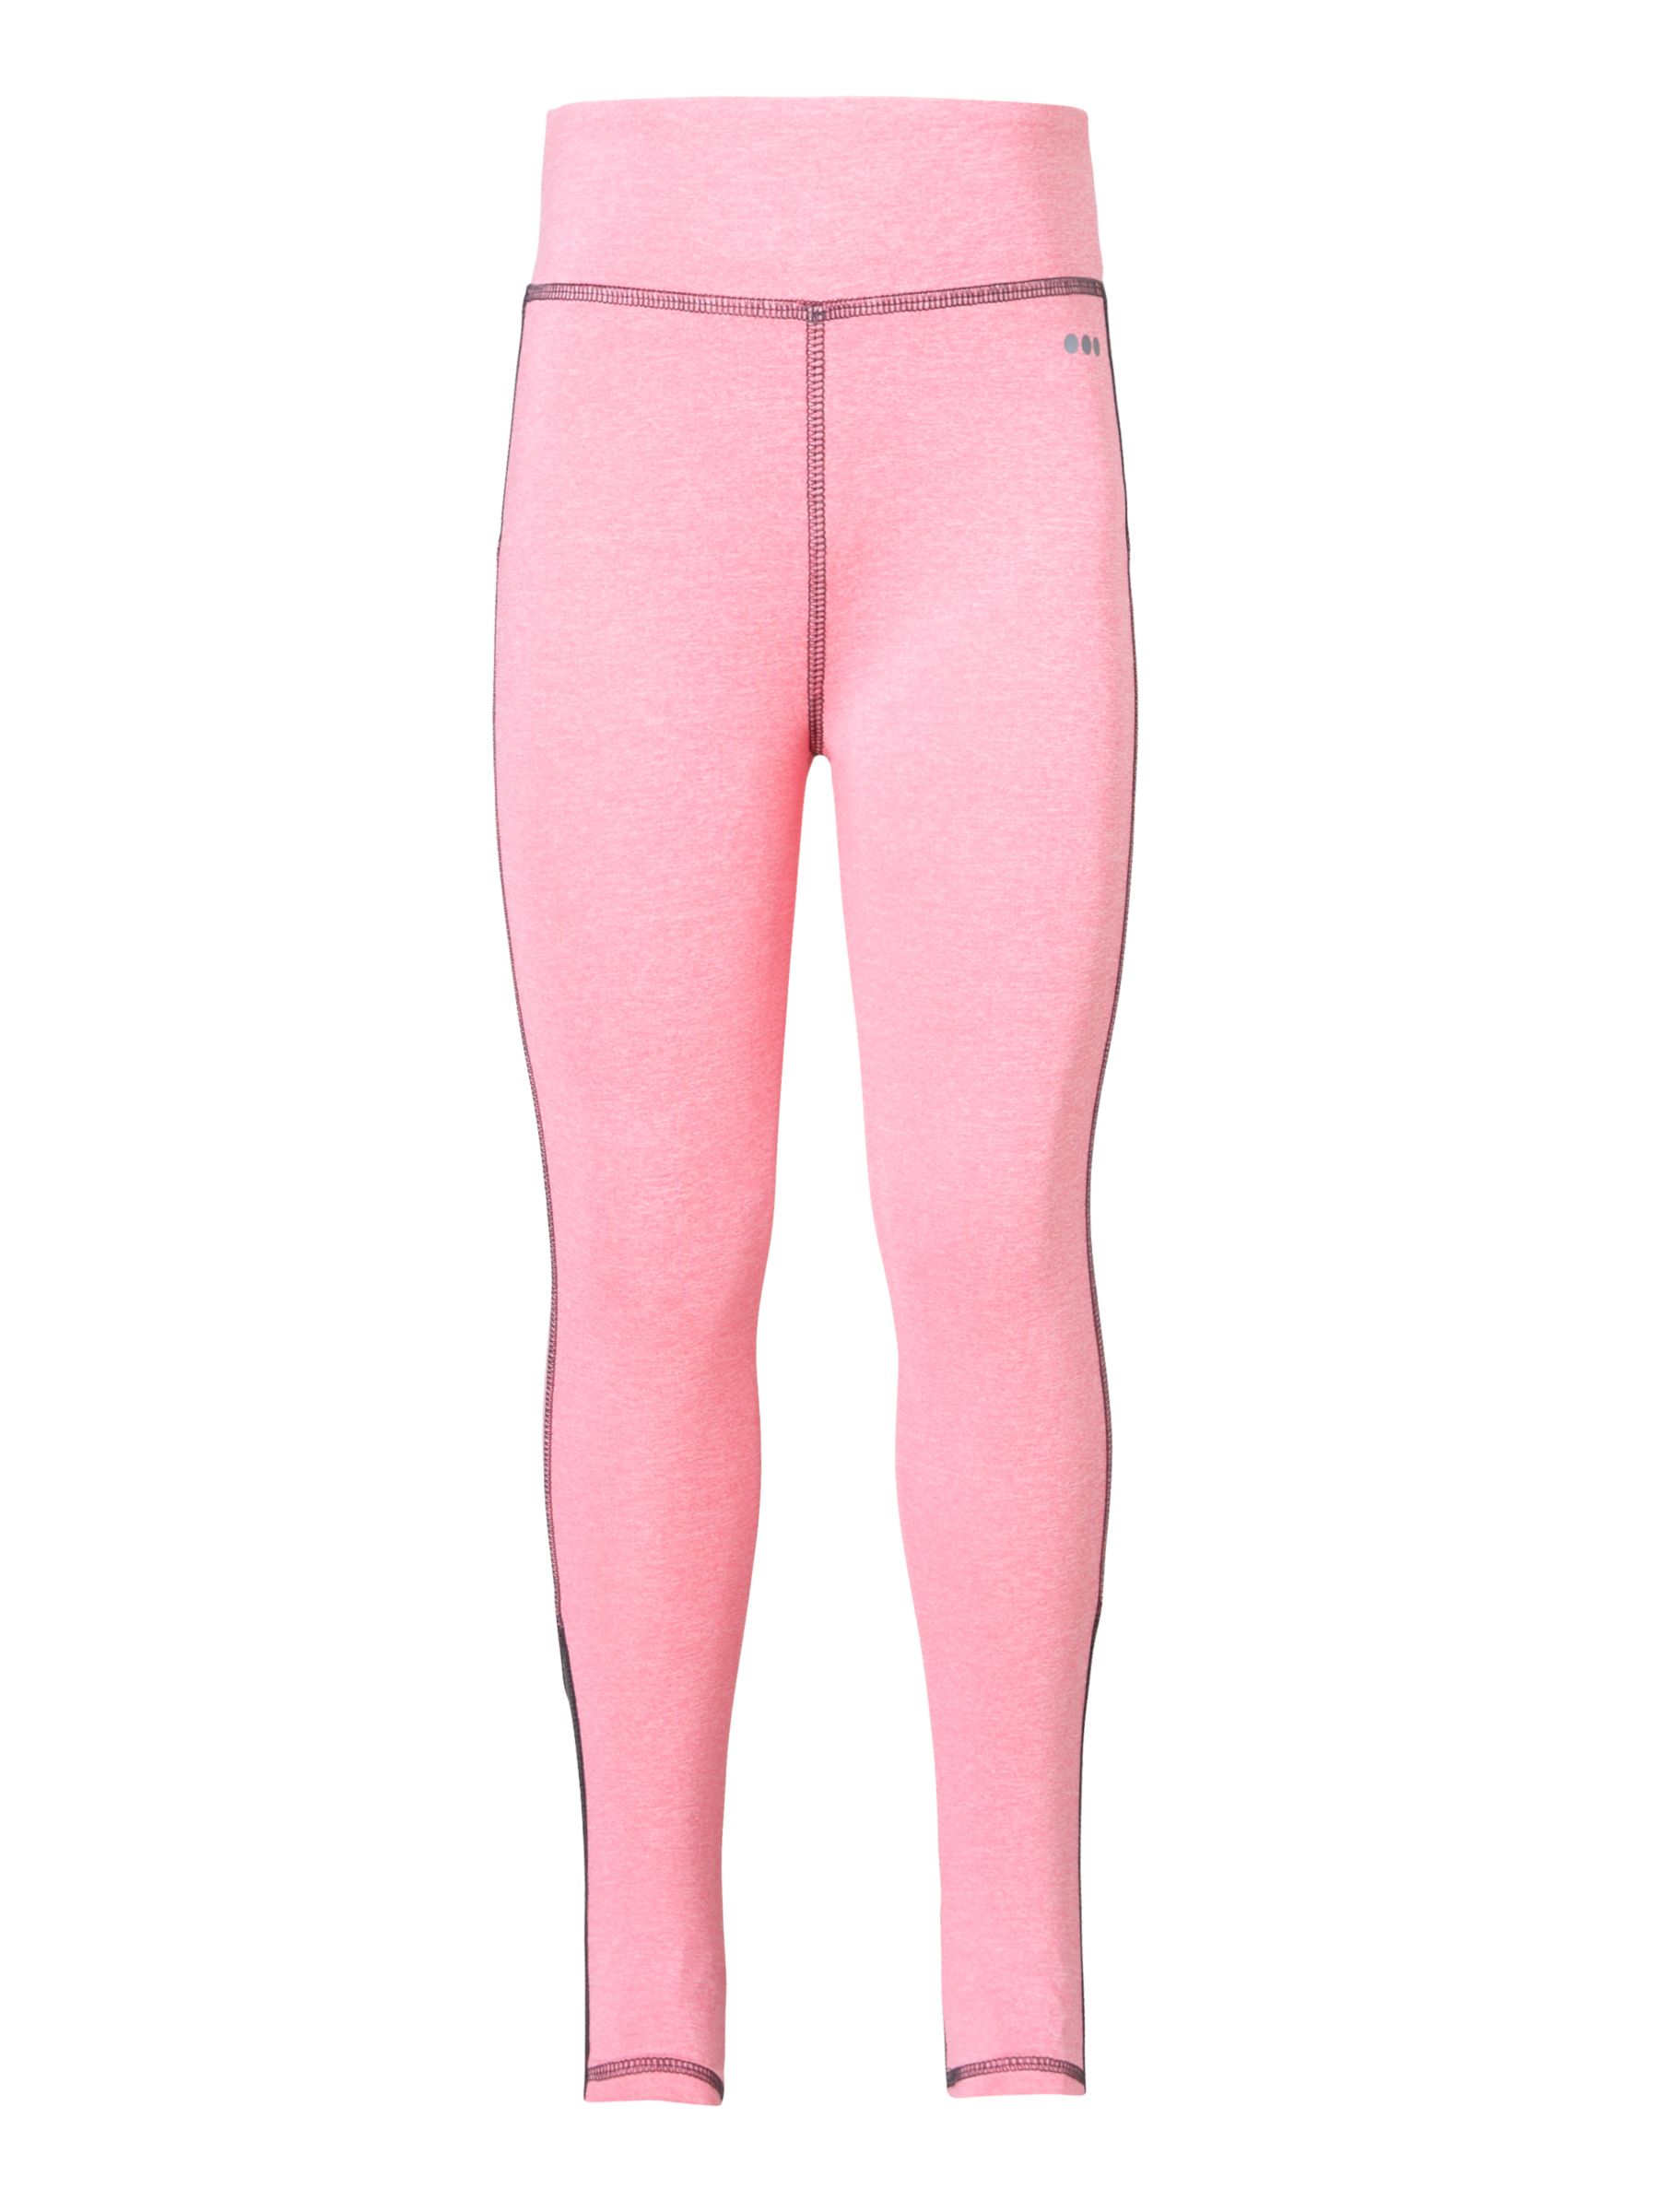 John Lewis Girls' Sports Leggings, Pink